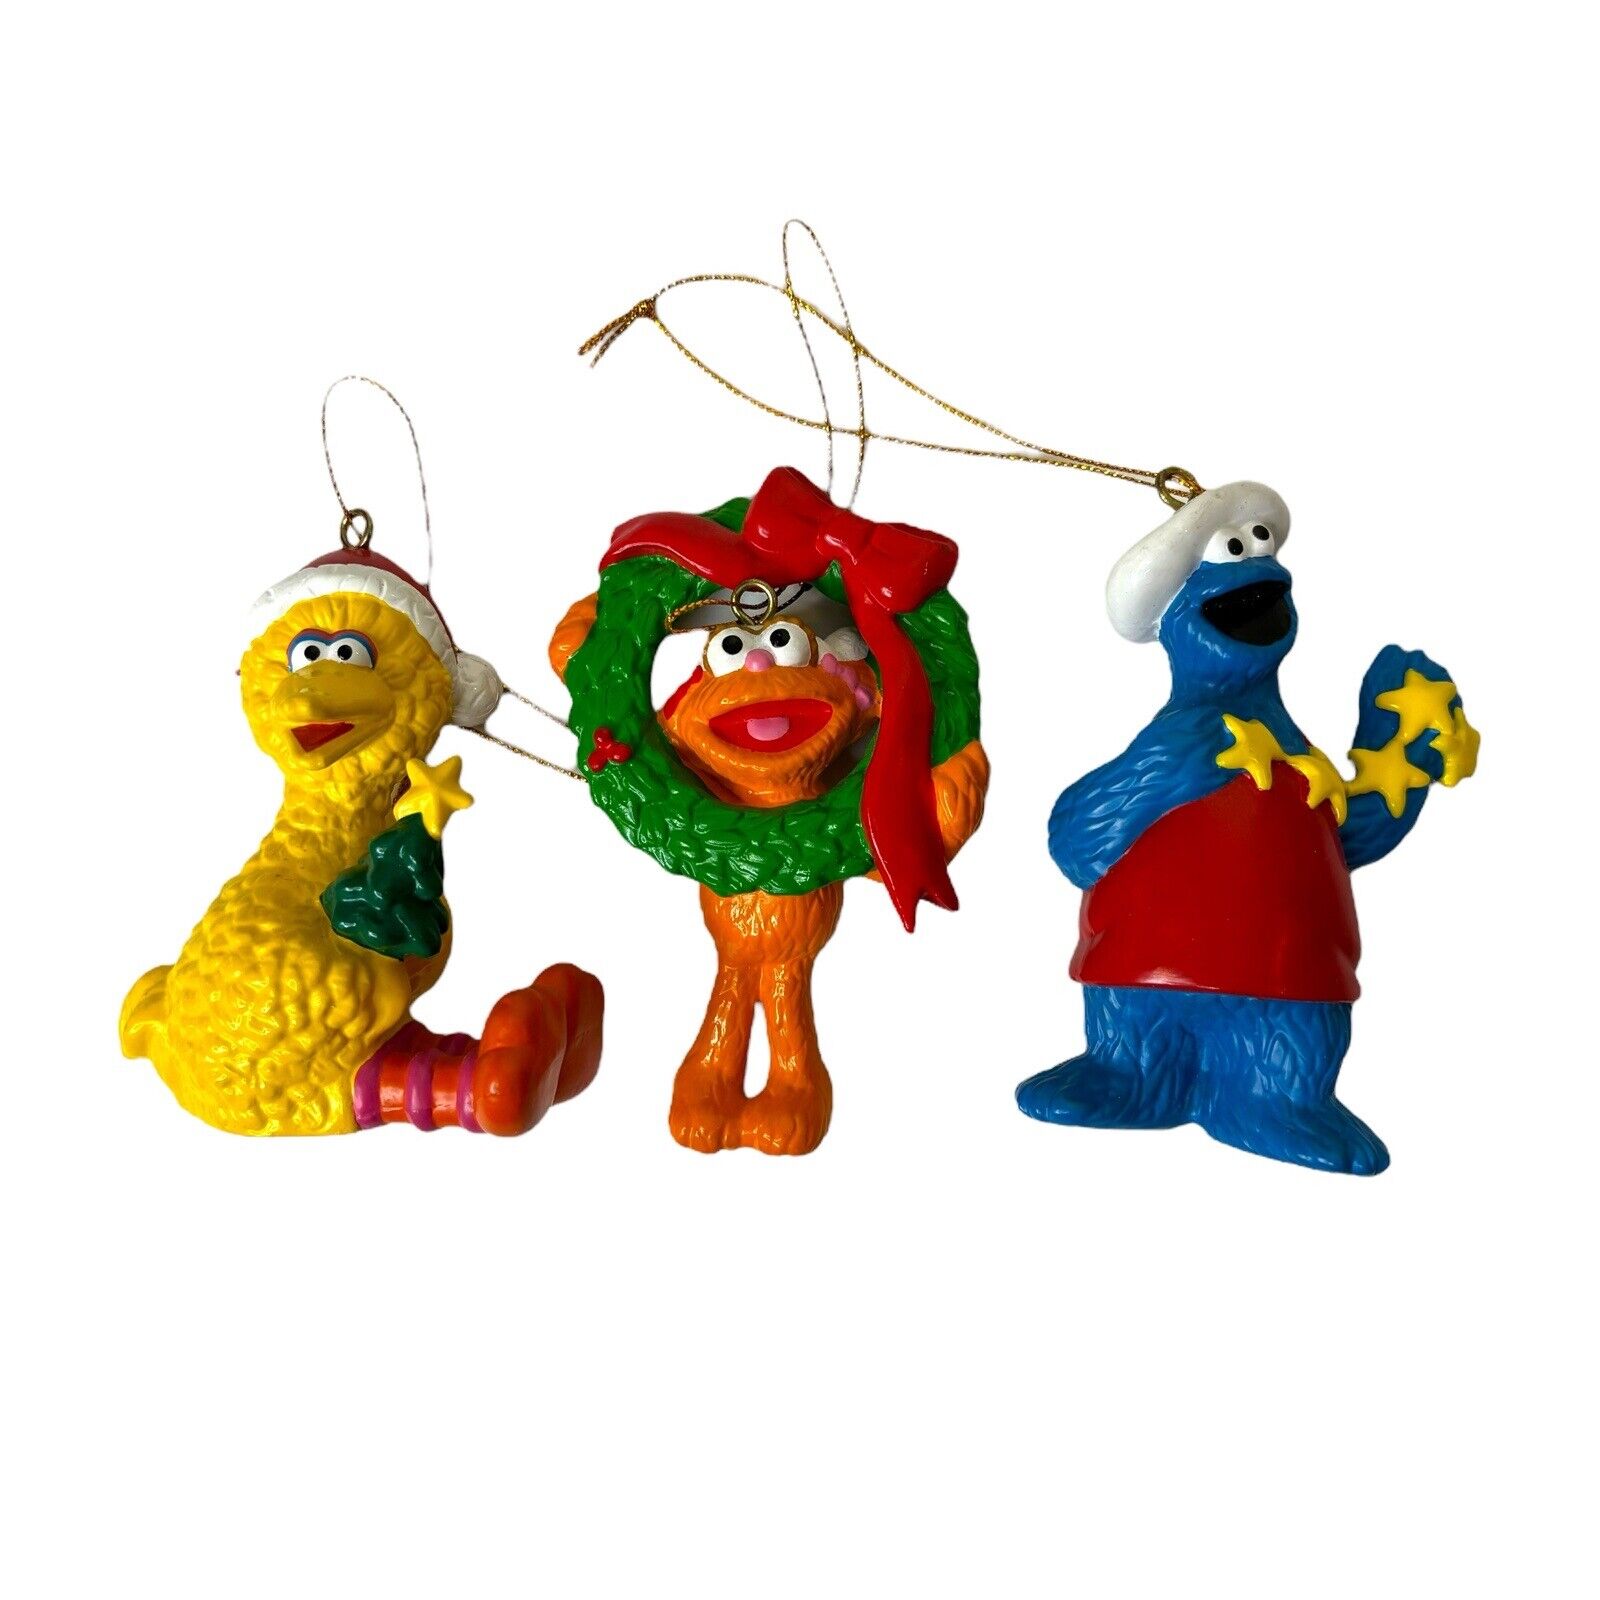 VTG Jim Henson Sesame Street Christmas Ornament Lot Big Bird Zoe Cookie Monster